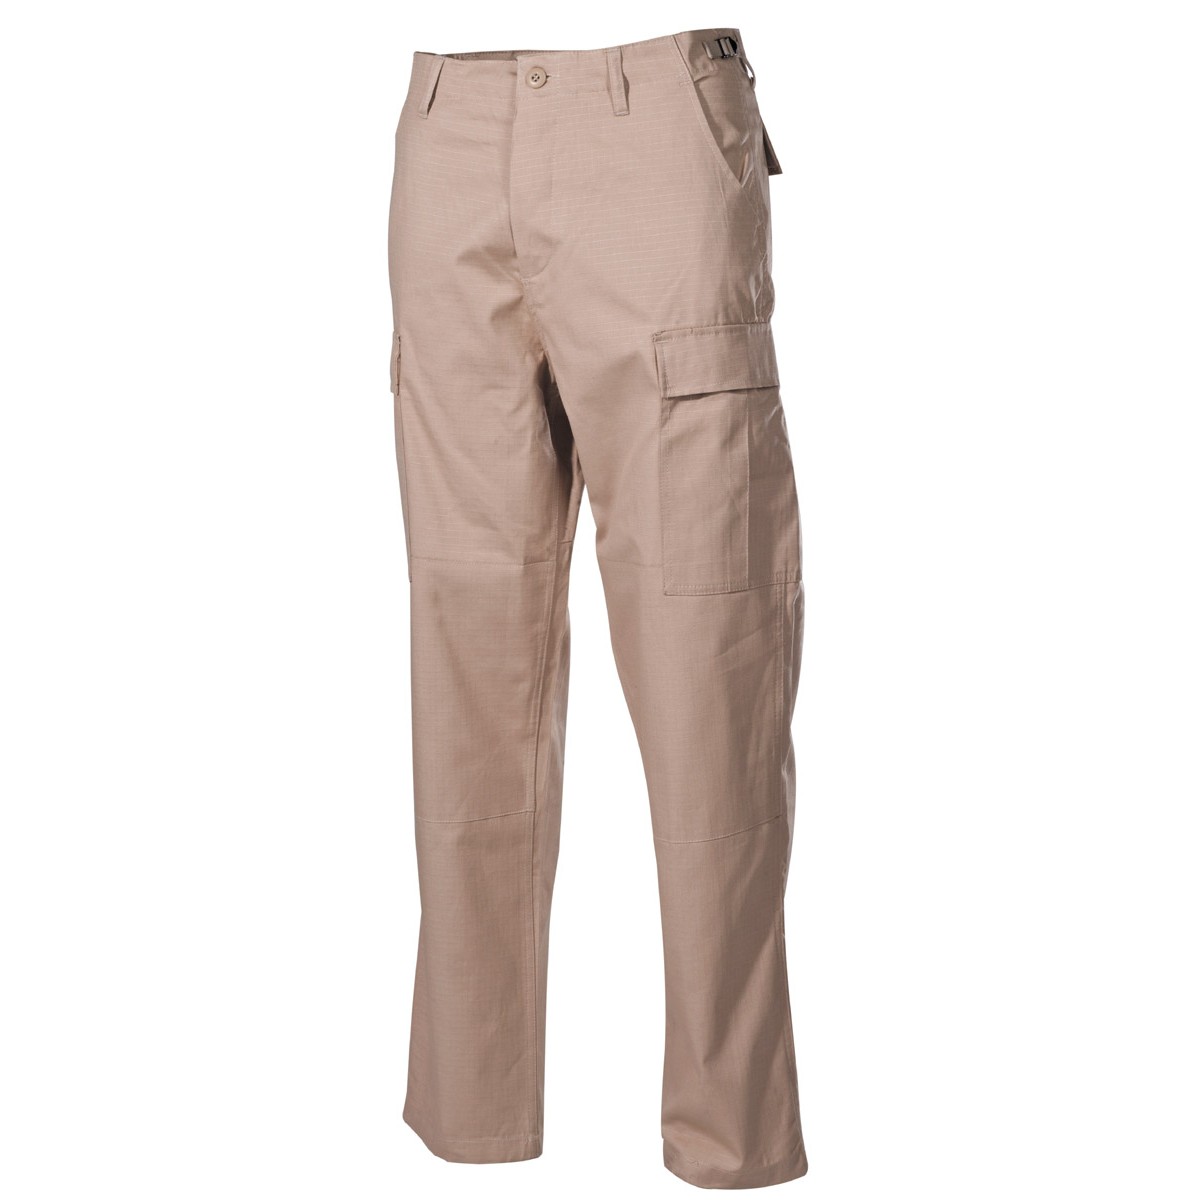 Bojové kalhoty US BDU - khaki, XL